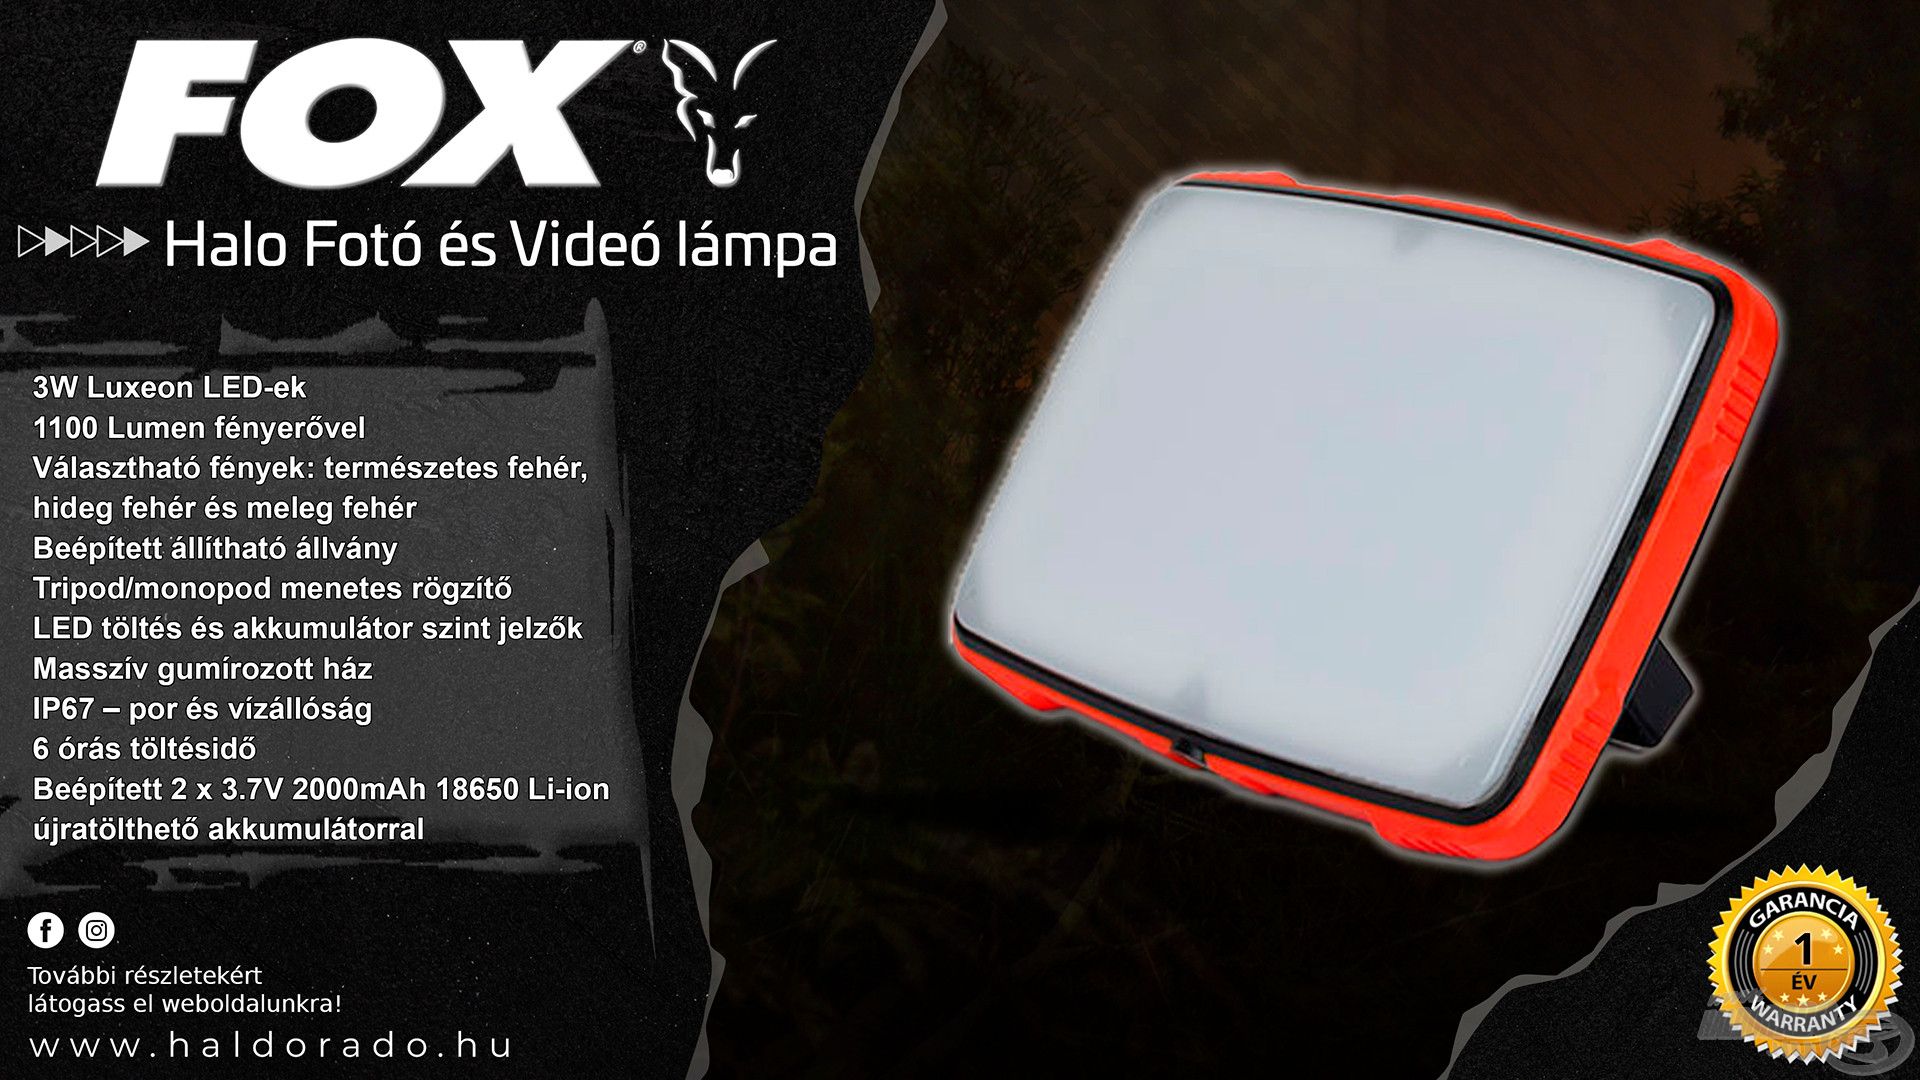 A FOX Halo Fotó és Videó lámpa egy prémium minőségű, multifunkcionális világítóeszköz